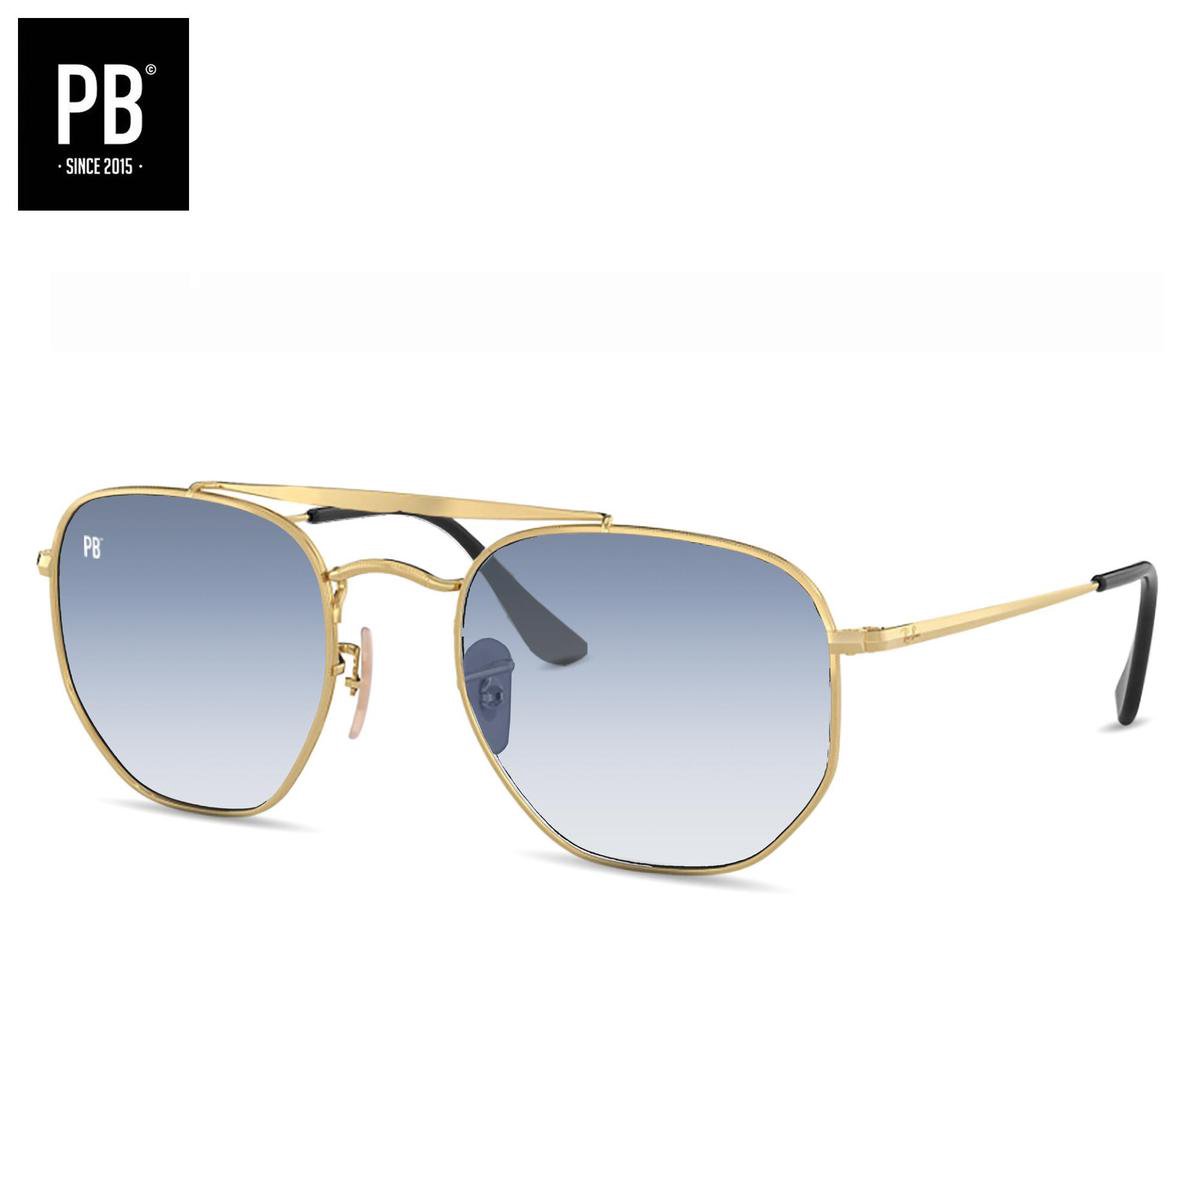 PB Sunglasses - Bridge Gradient Blue. - Zonnebril heren en dames - Gepolariseerd - Goud metalen frame - Stijlvolle neusbrug